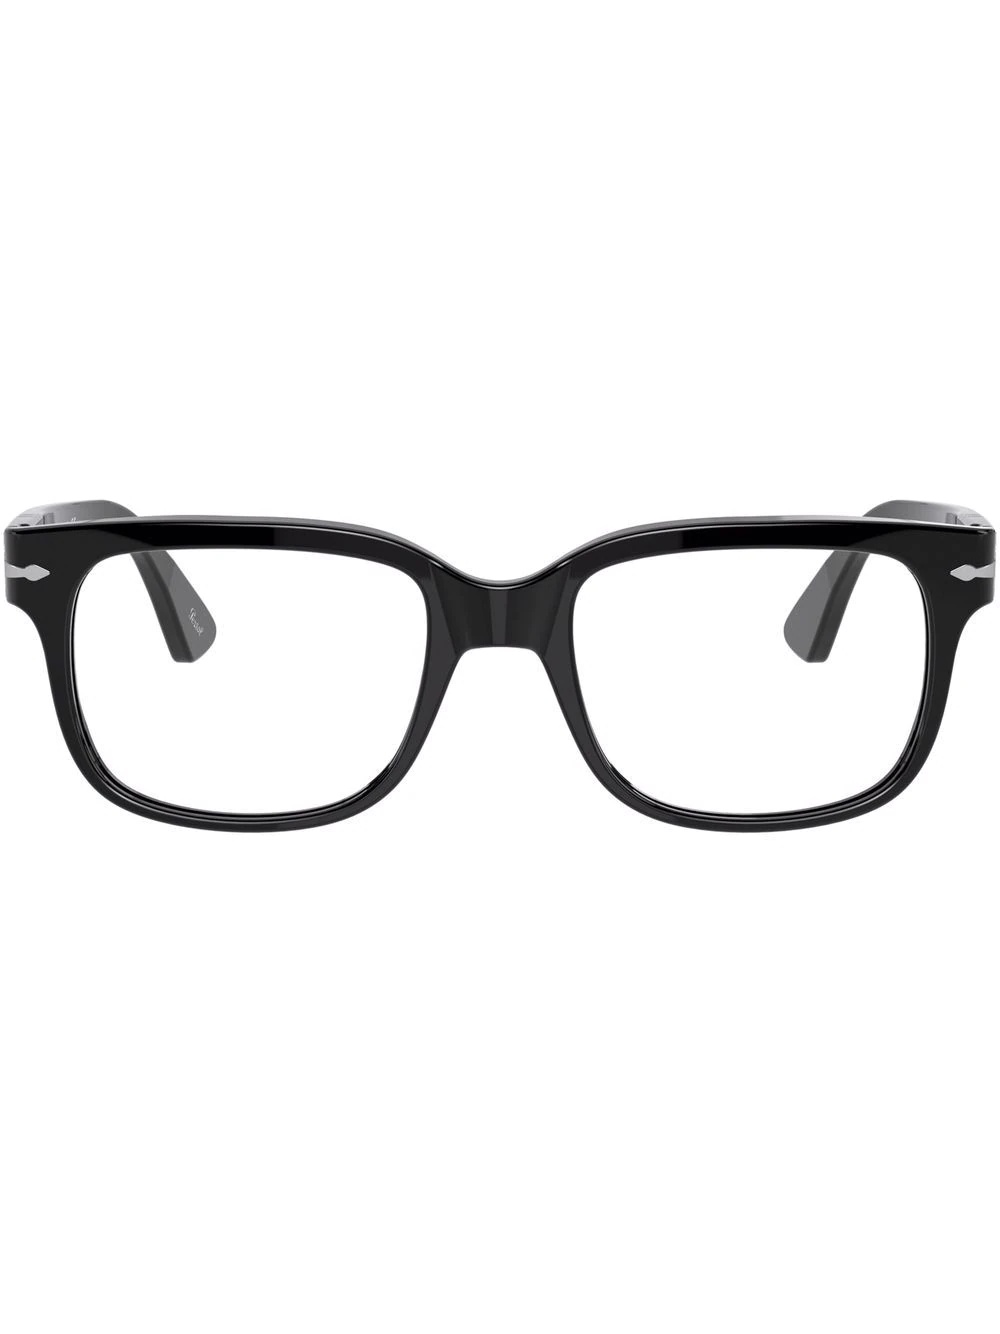 square frame glasses - 1